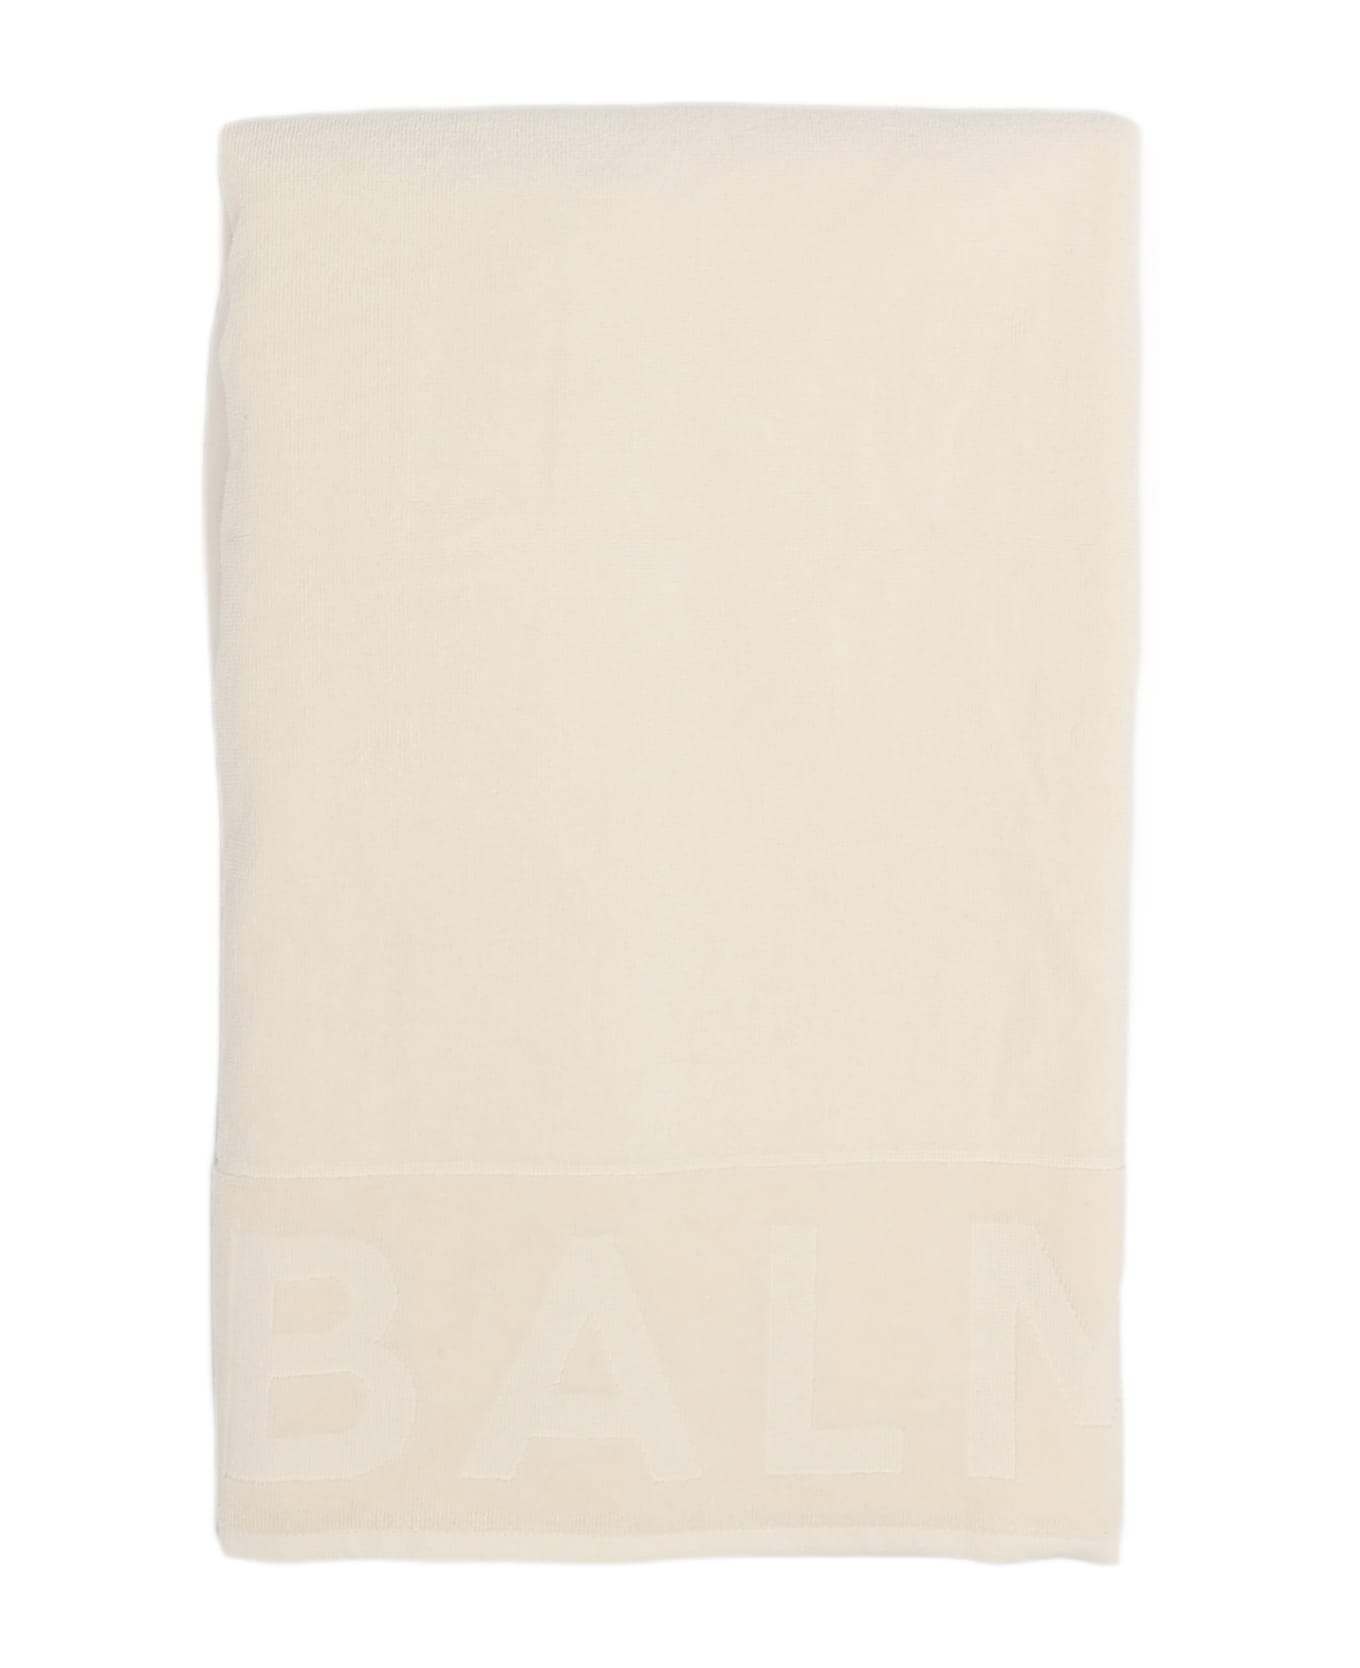 Balmain Beach Towel Towel - AVORIO アクセサリー＆ギフト